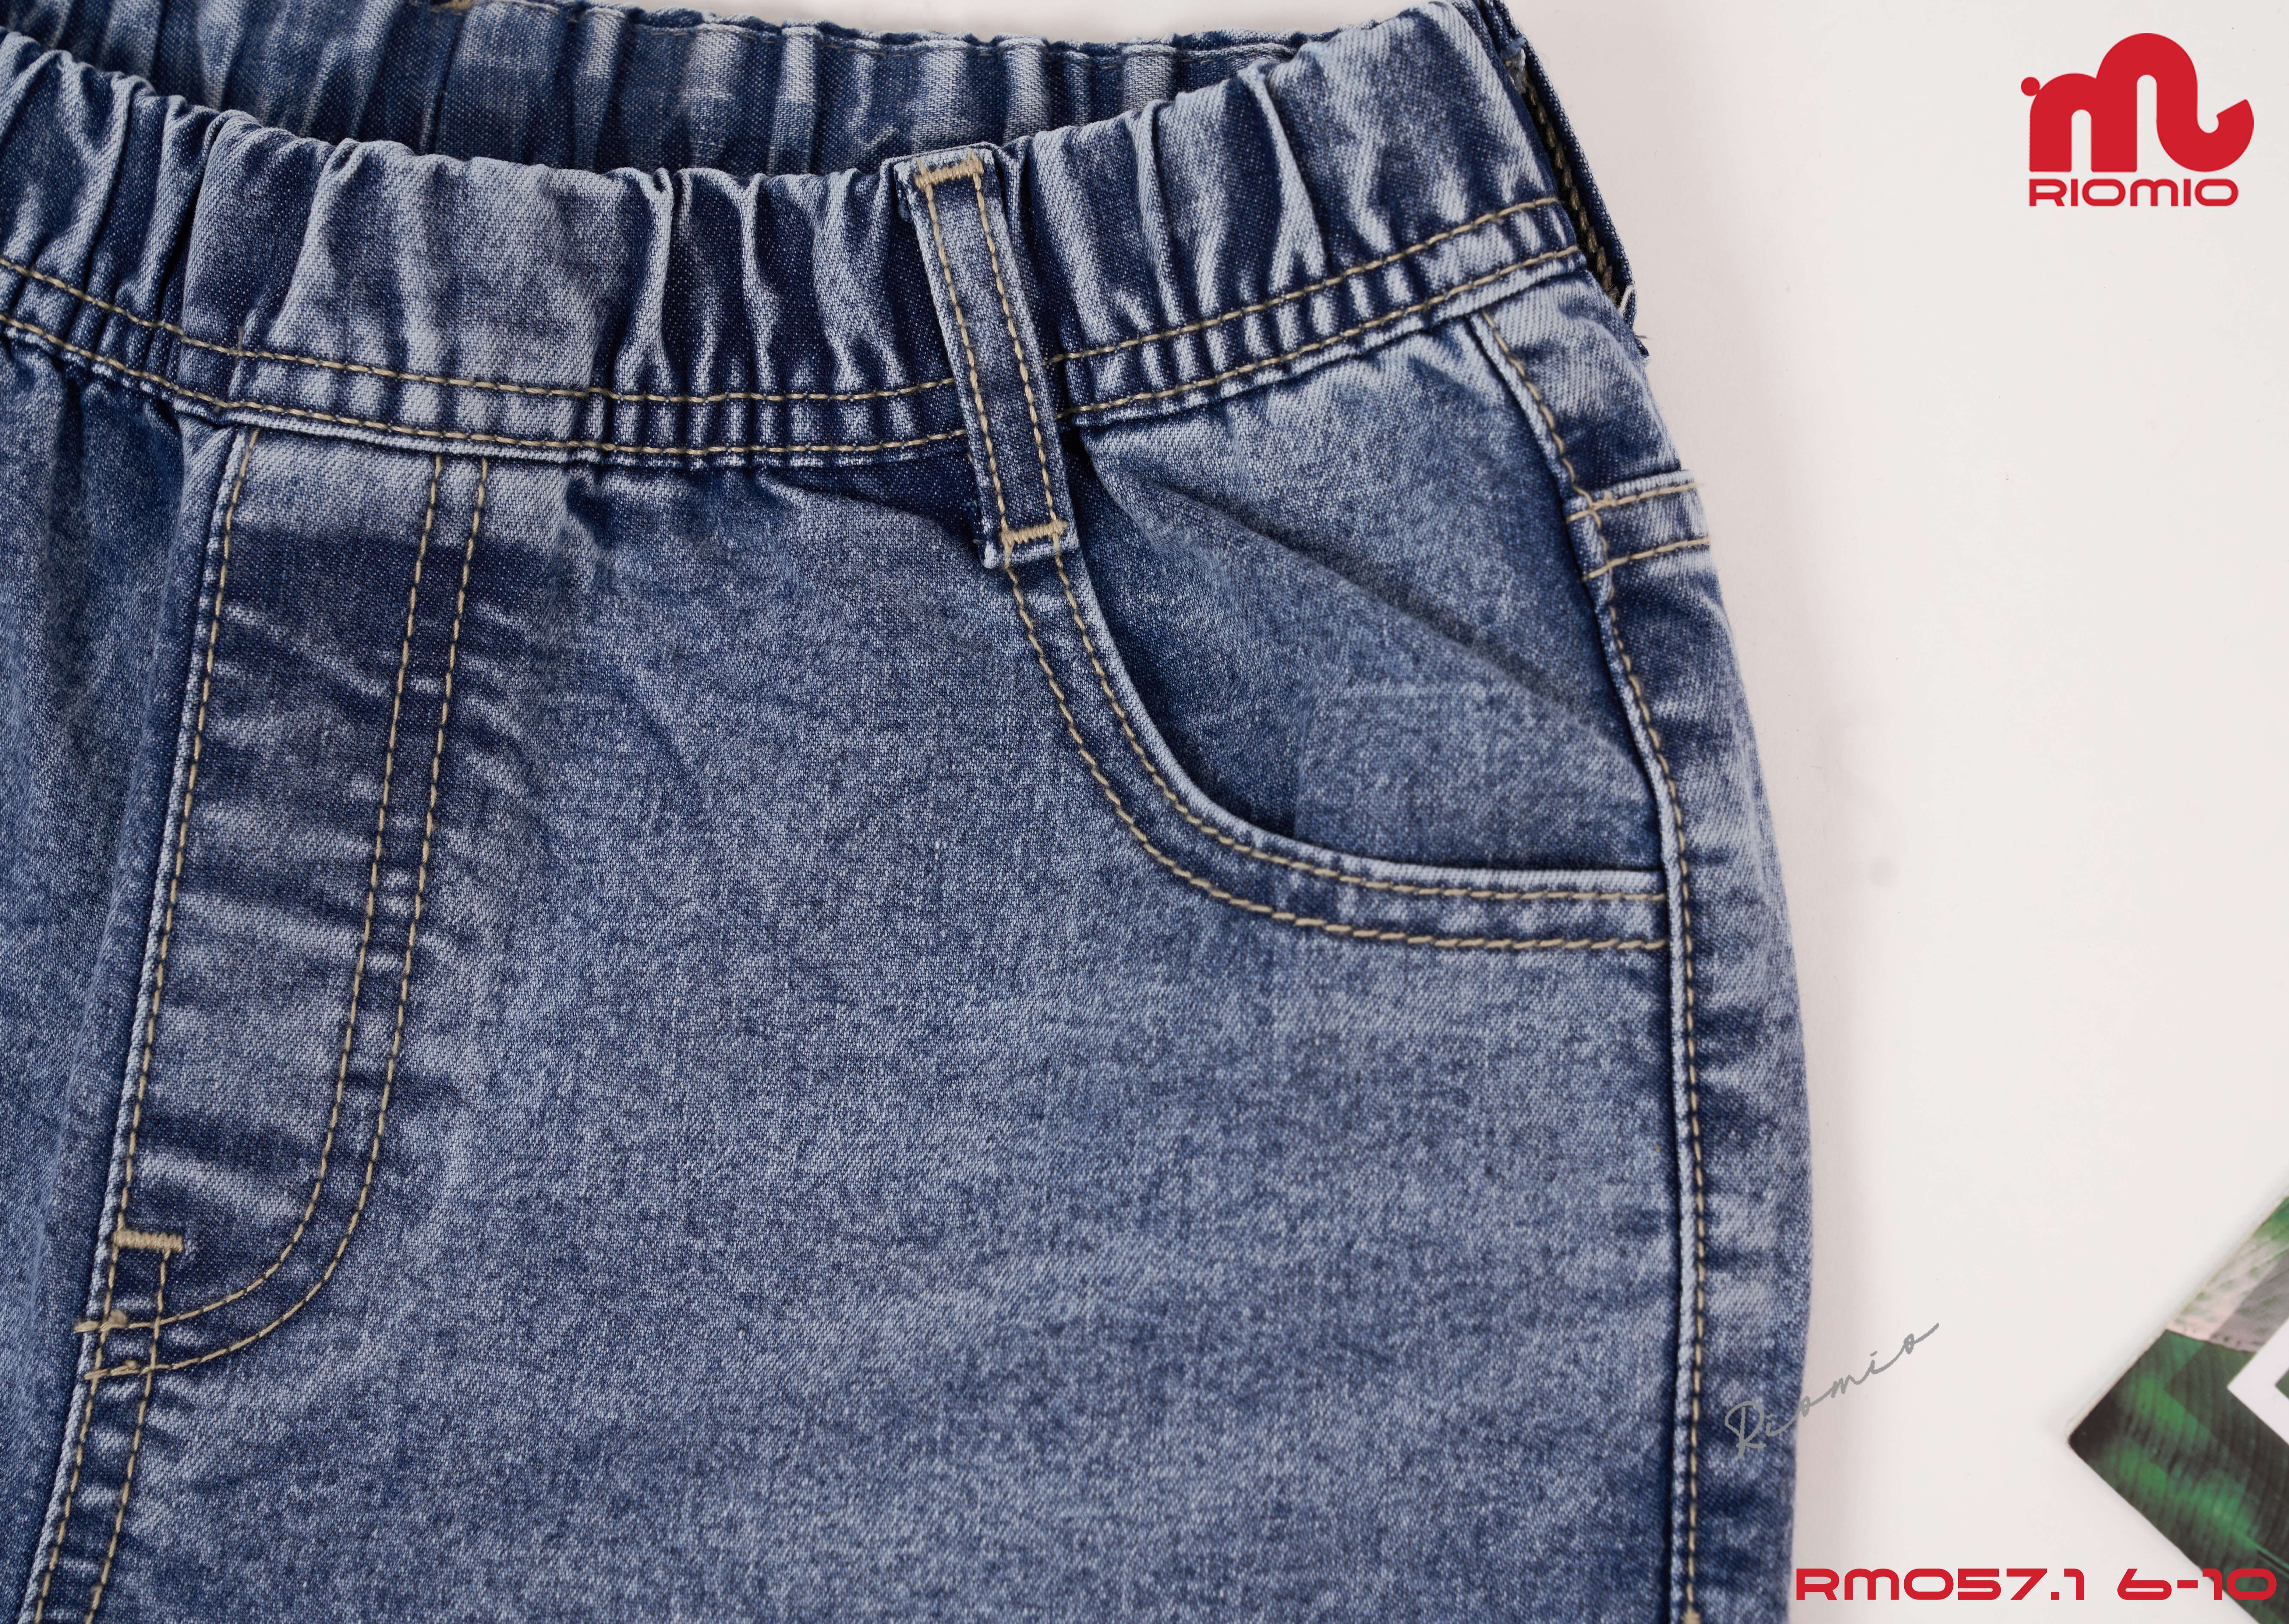 Quần jeans bé trai [Denim Cotton USA] chính hãng RIOMIO – RM057.1 màu light